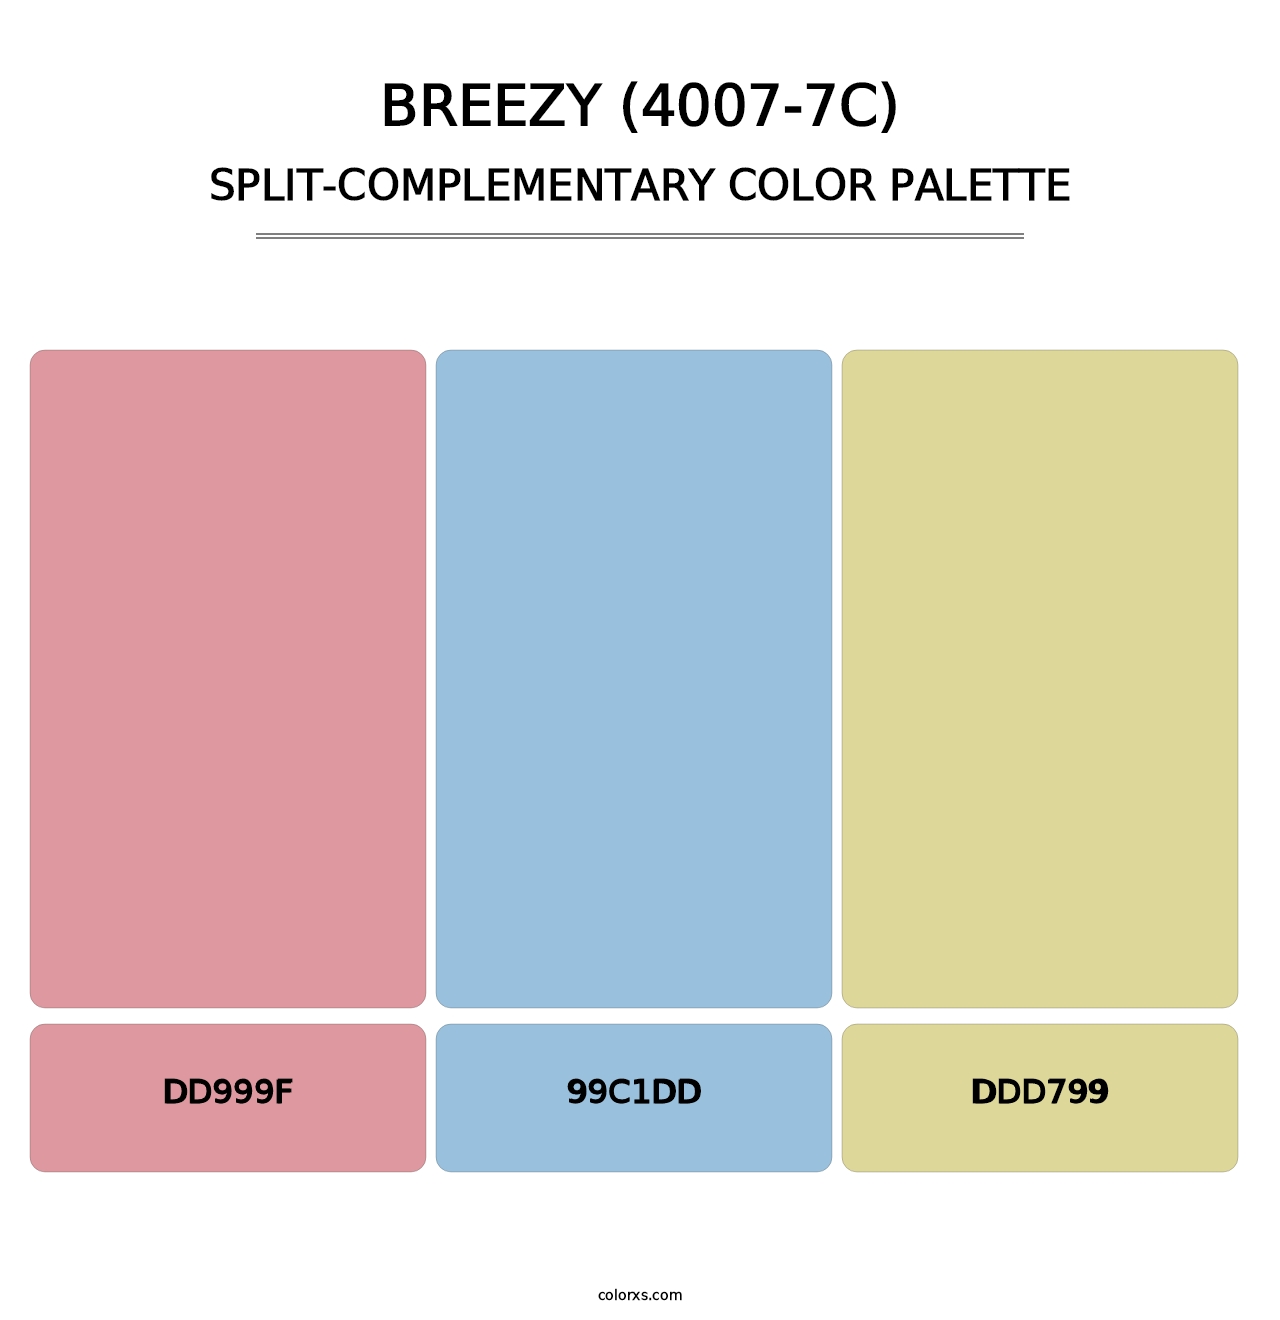 Breezy (4007-7C) - Split-Complementary Color Palette